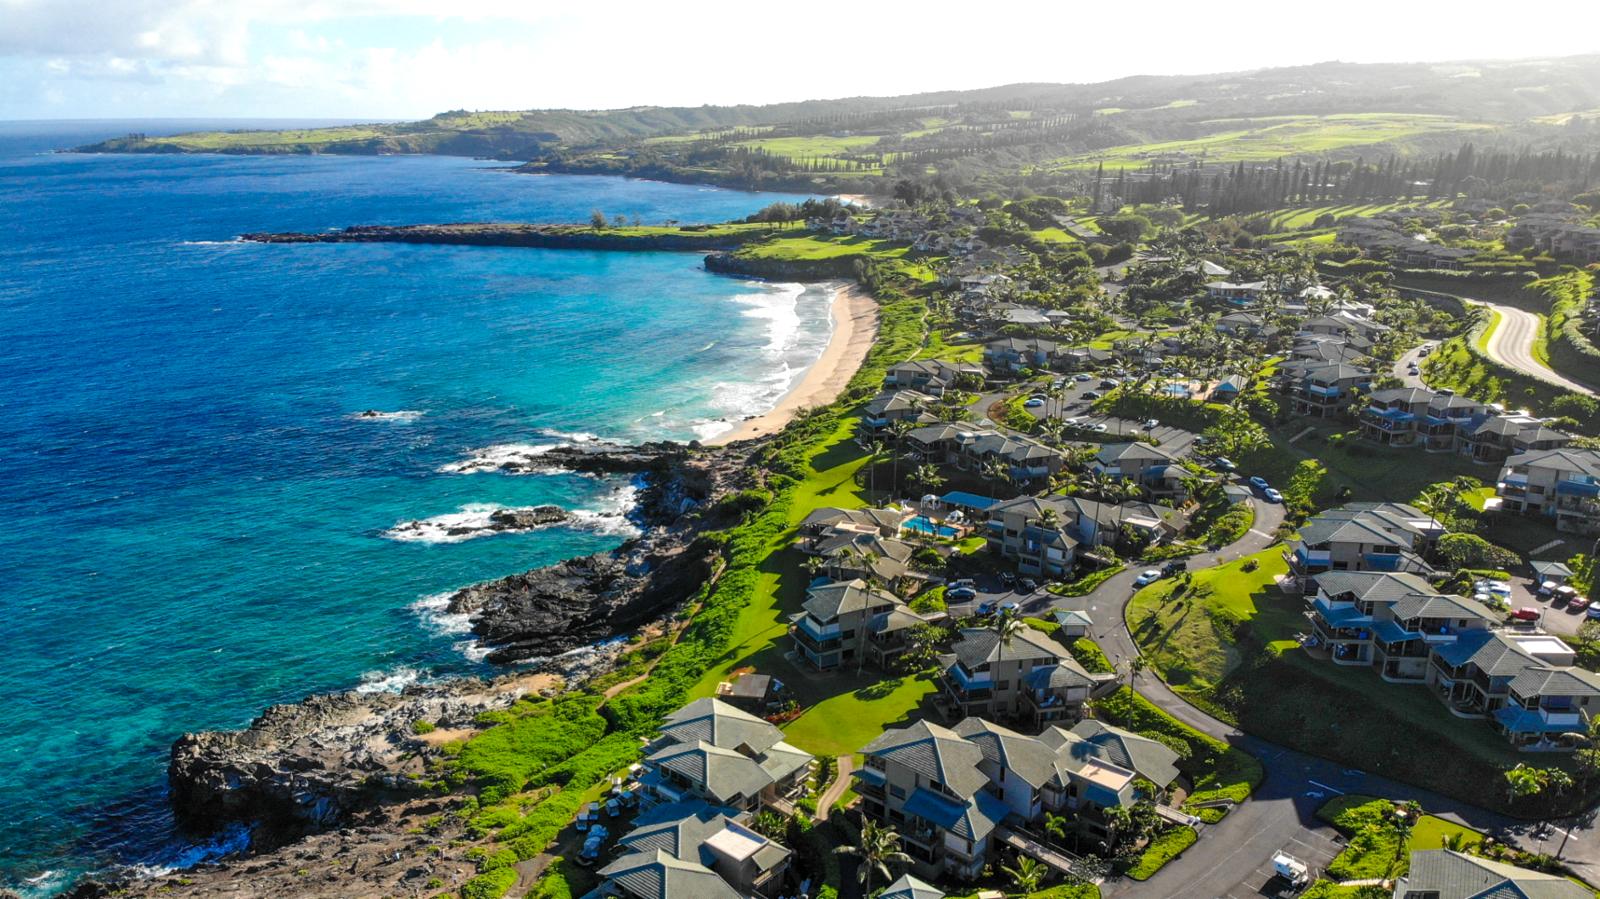 Maui, how do you do it? Alluring ocean views!